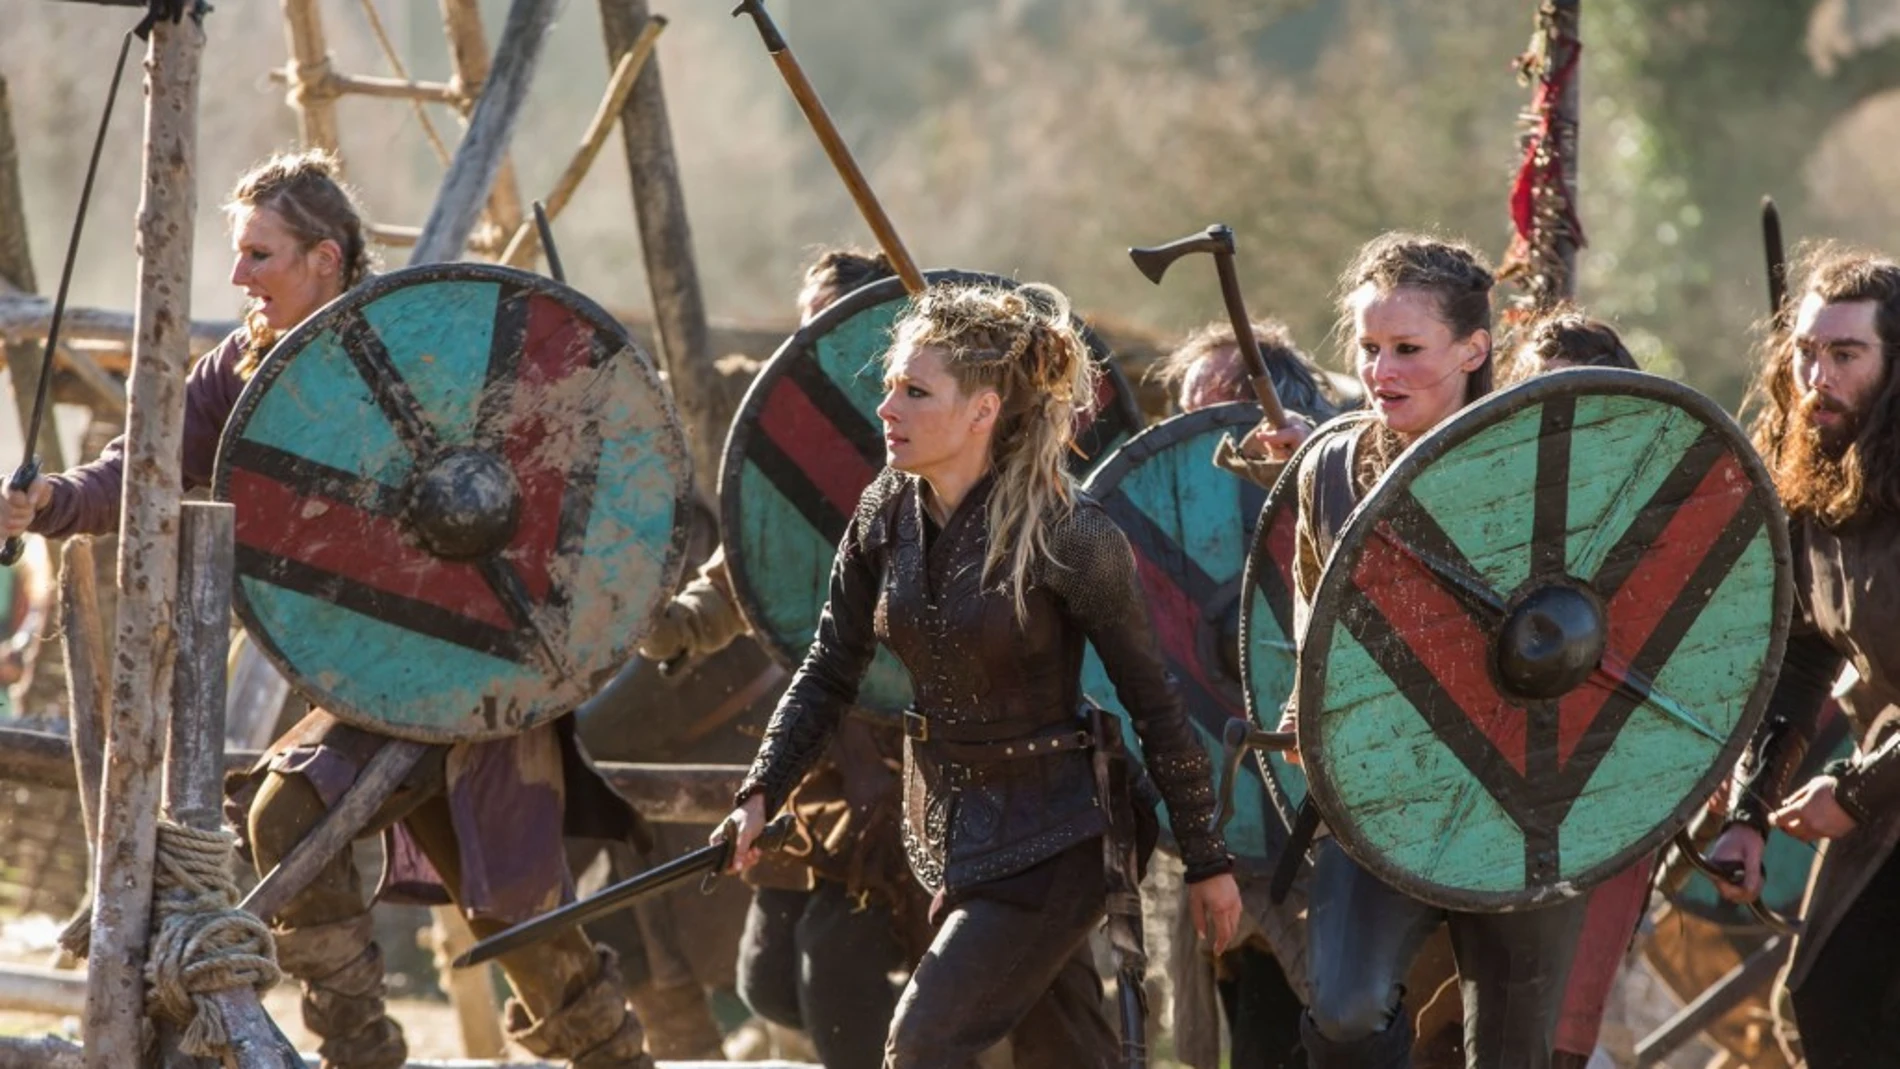 Las series sobre vikingos han popularizado a estos guerreros y han difundido la idea de las mujeres-soldado